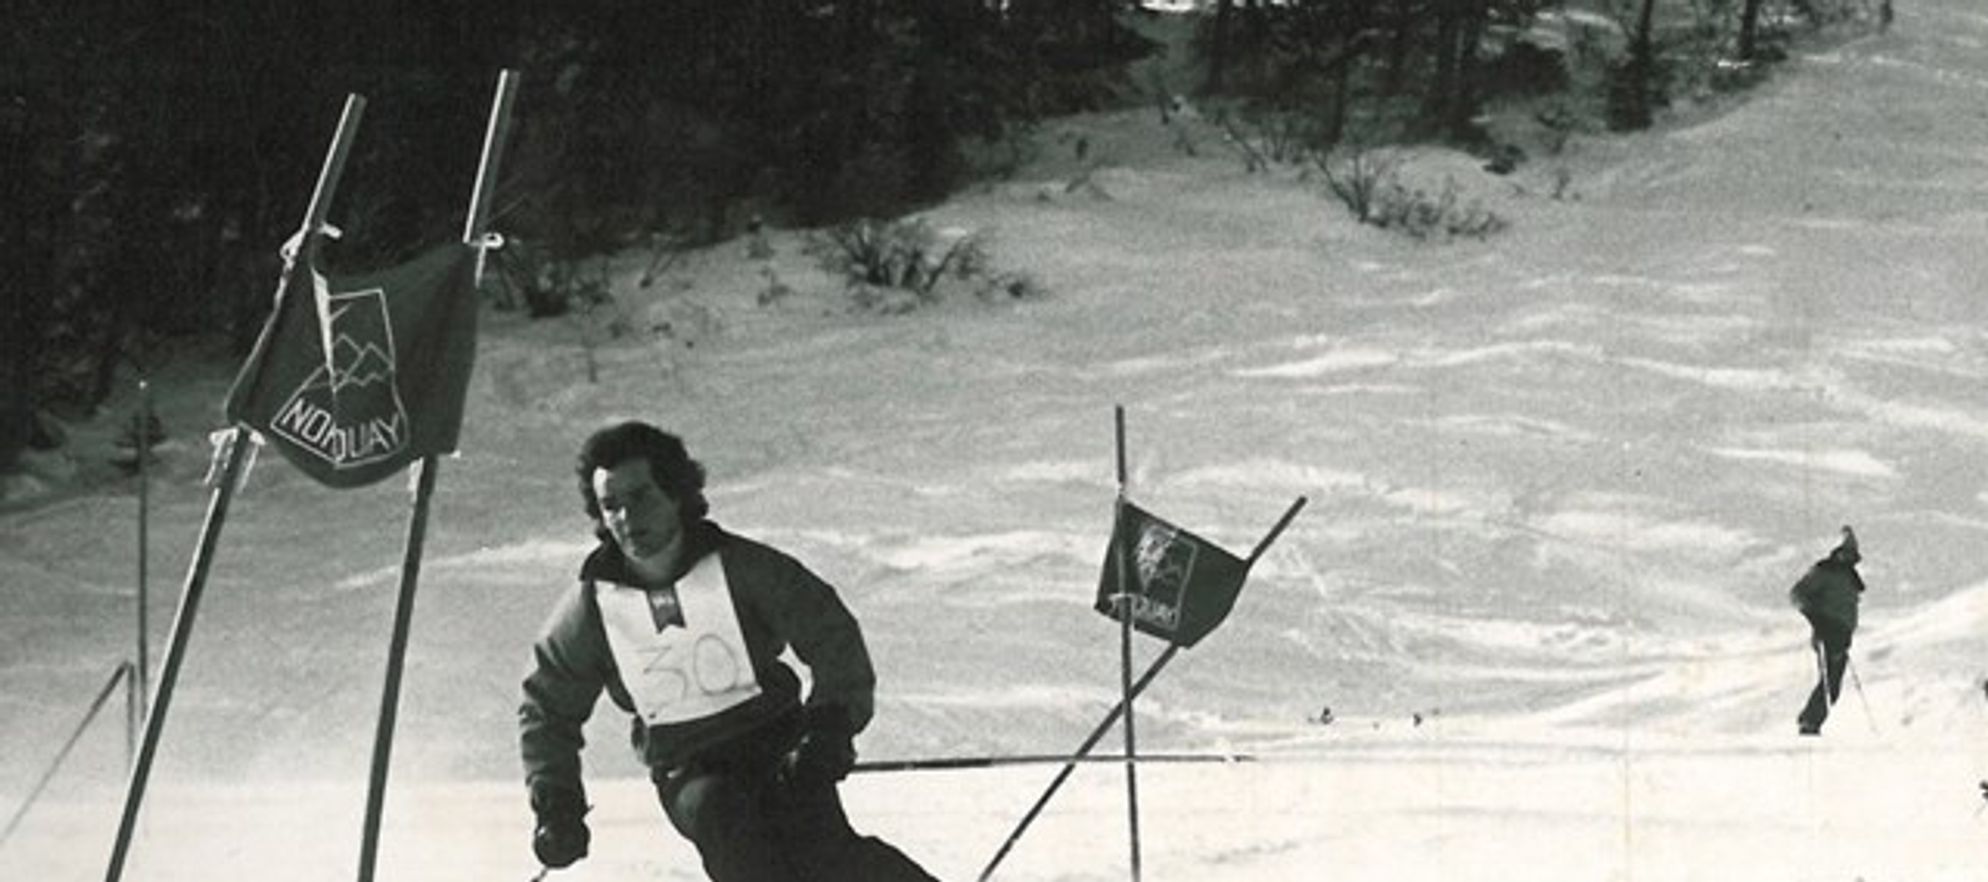 Bruno Engler Memorial Ski Race